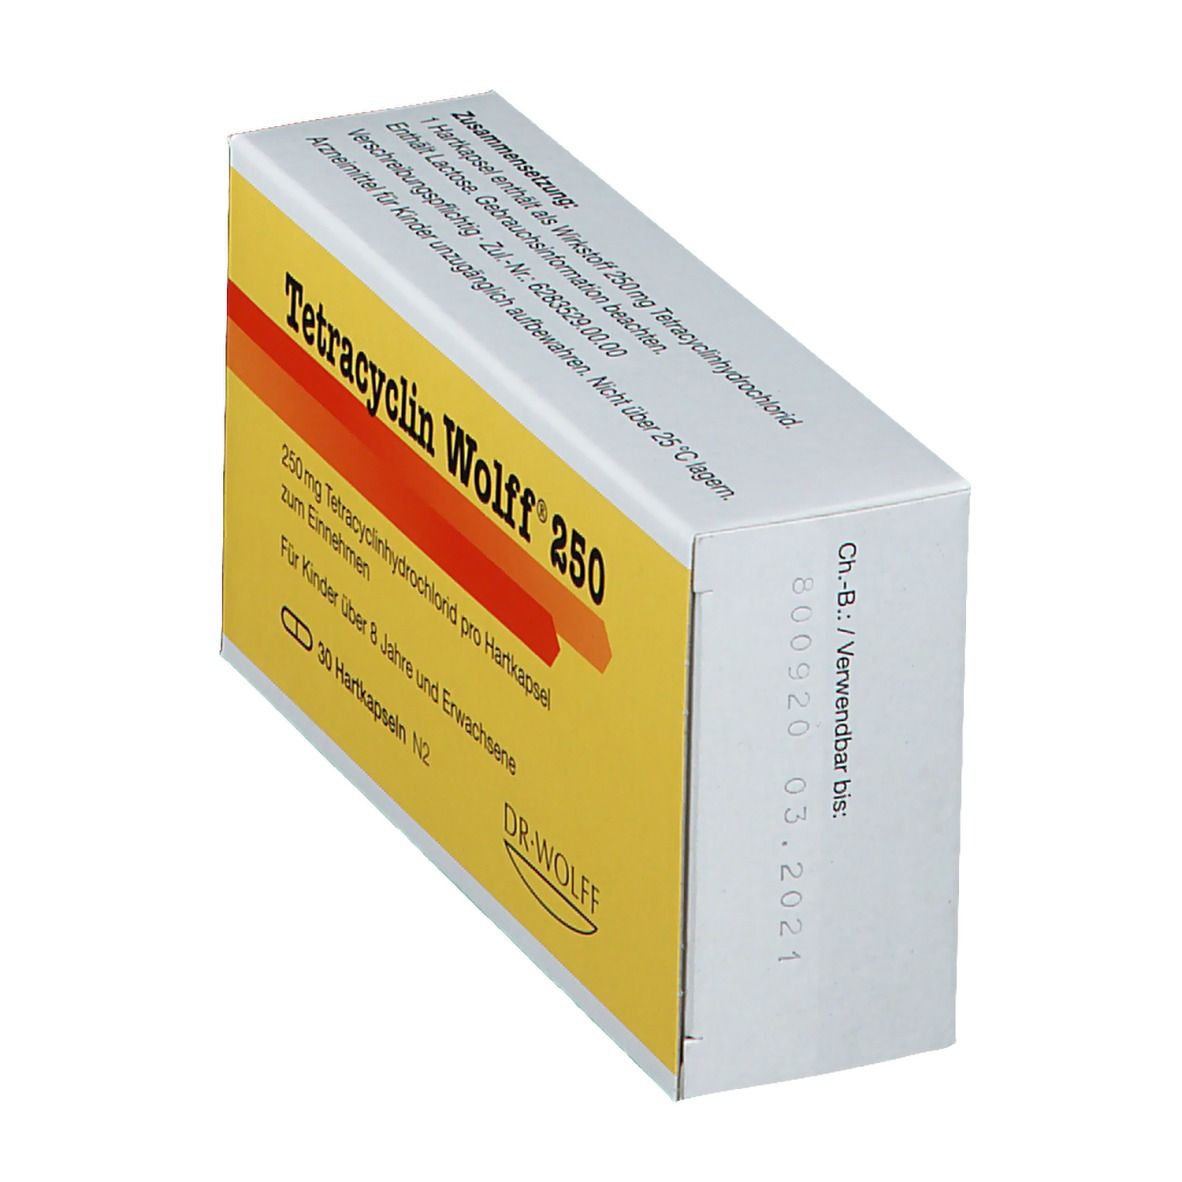 Tetracyclin Wolff® 250 Kapseln